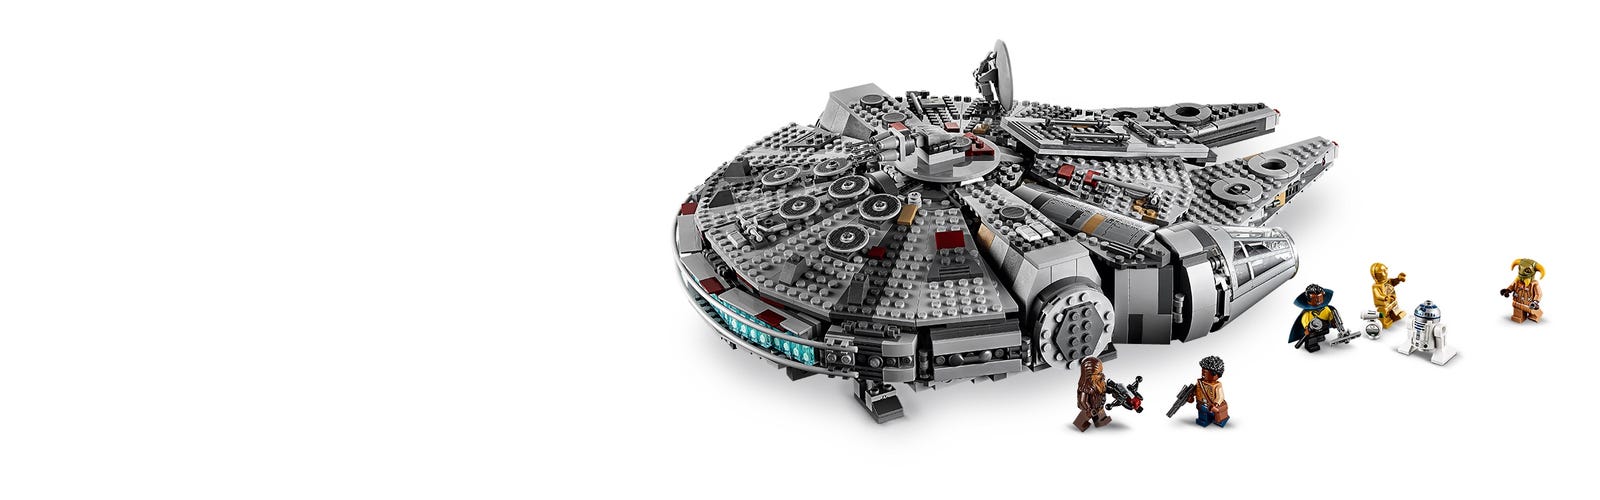 LEGO Star Wars TM Millennium Falcon 75257 by LEGO Systems, Inc.